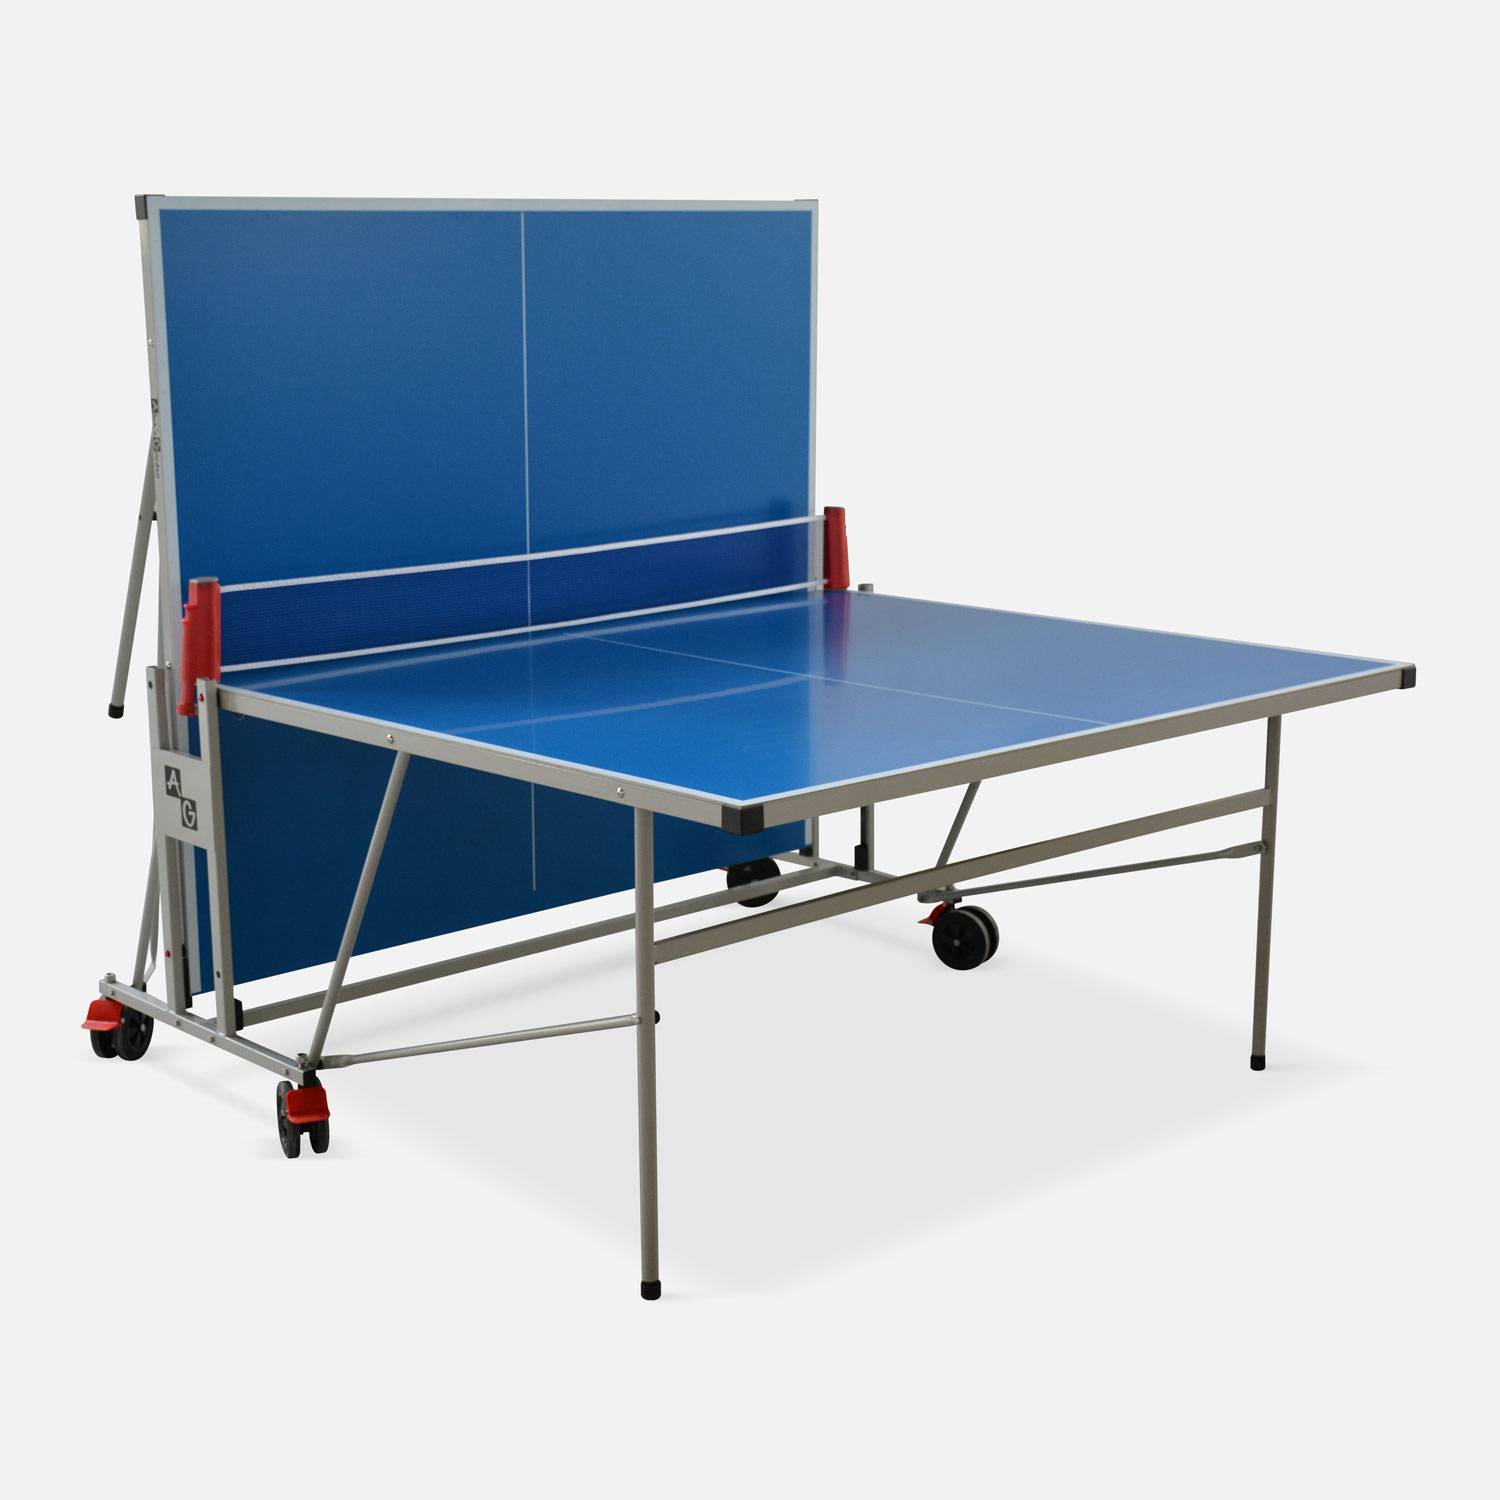 Table de ping pong OUTDOOR bleue, avec 4 raquettes et 6 balles, pour utilisation extérieure, sport tennis de table Photo6